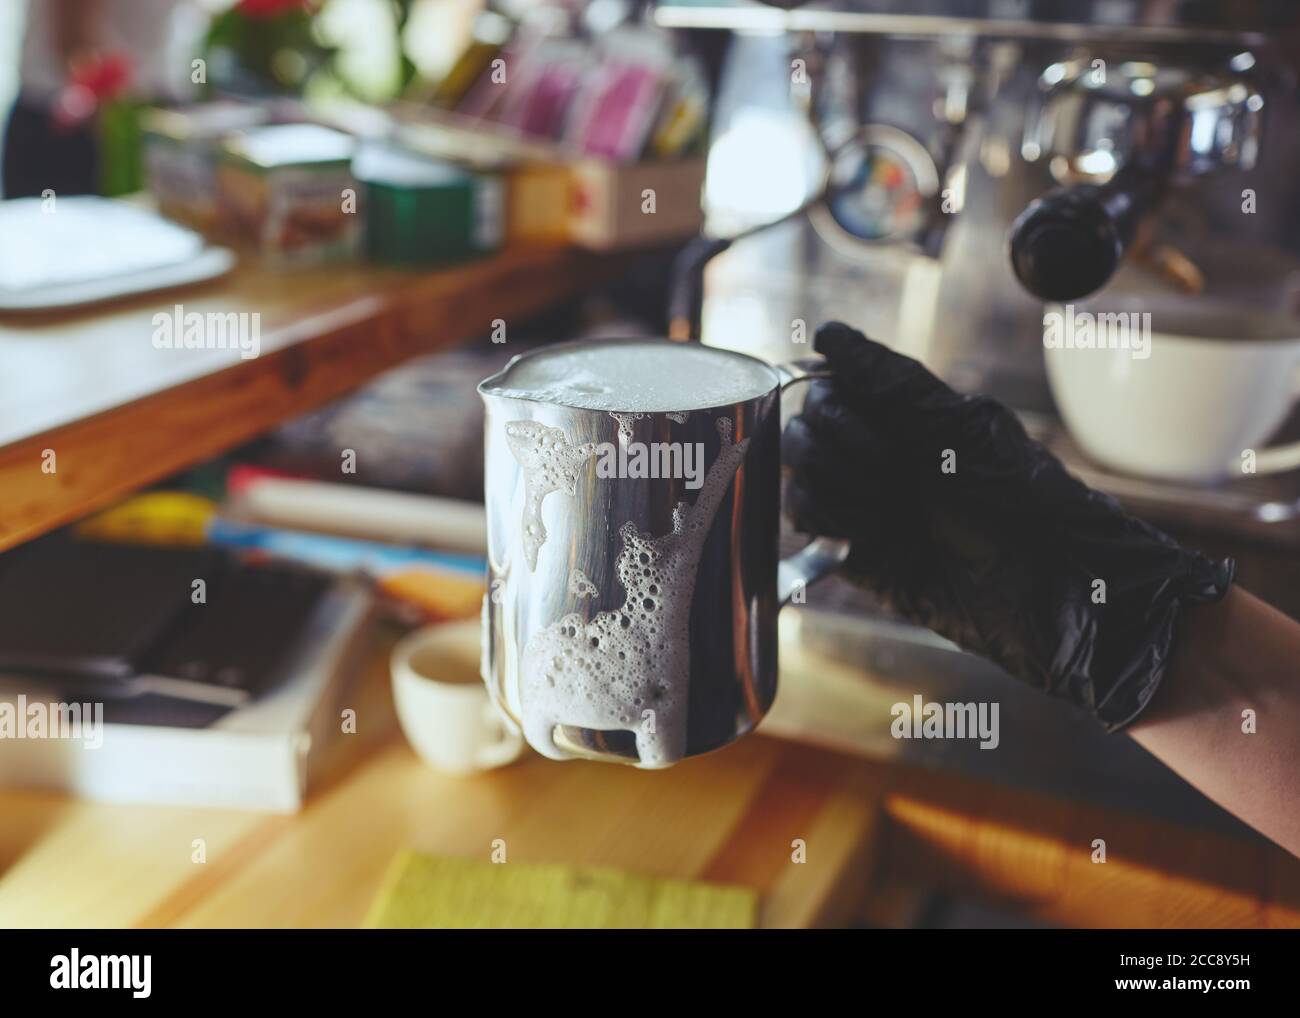 Barista portant des gants médicaux noirs en latex, préparant une boisson à l'aide d'une machine à espresso dans le café du magasin. Une femme tient le pichet de lait en métal à la main. Banque D'Images